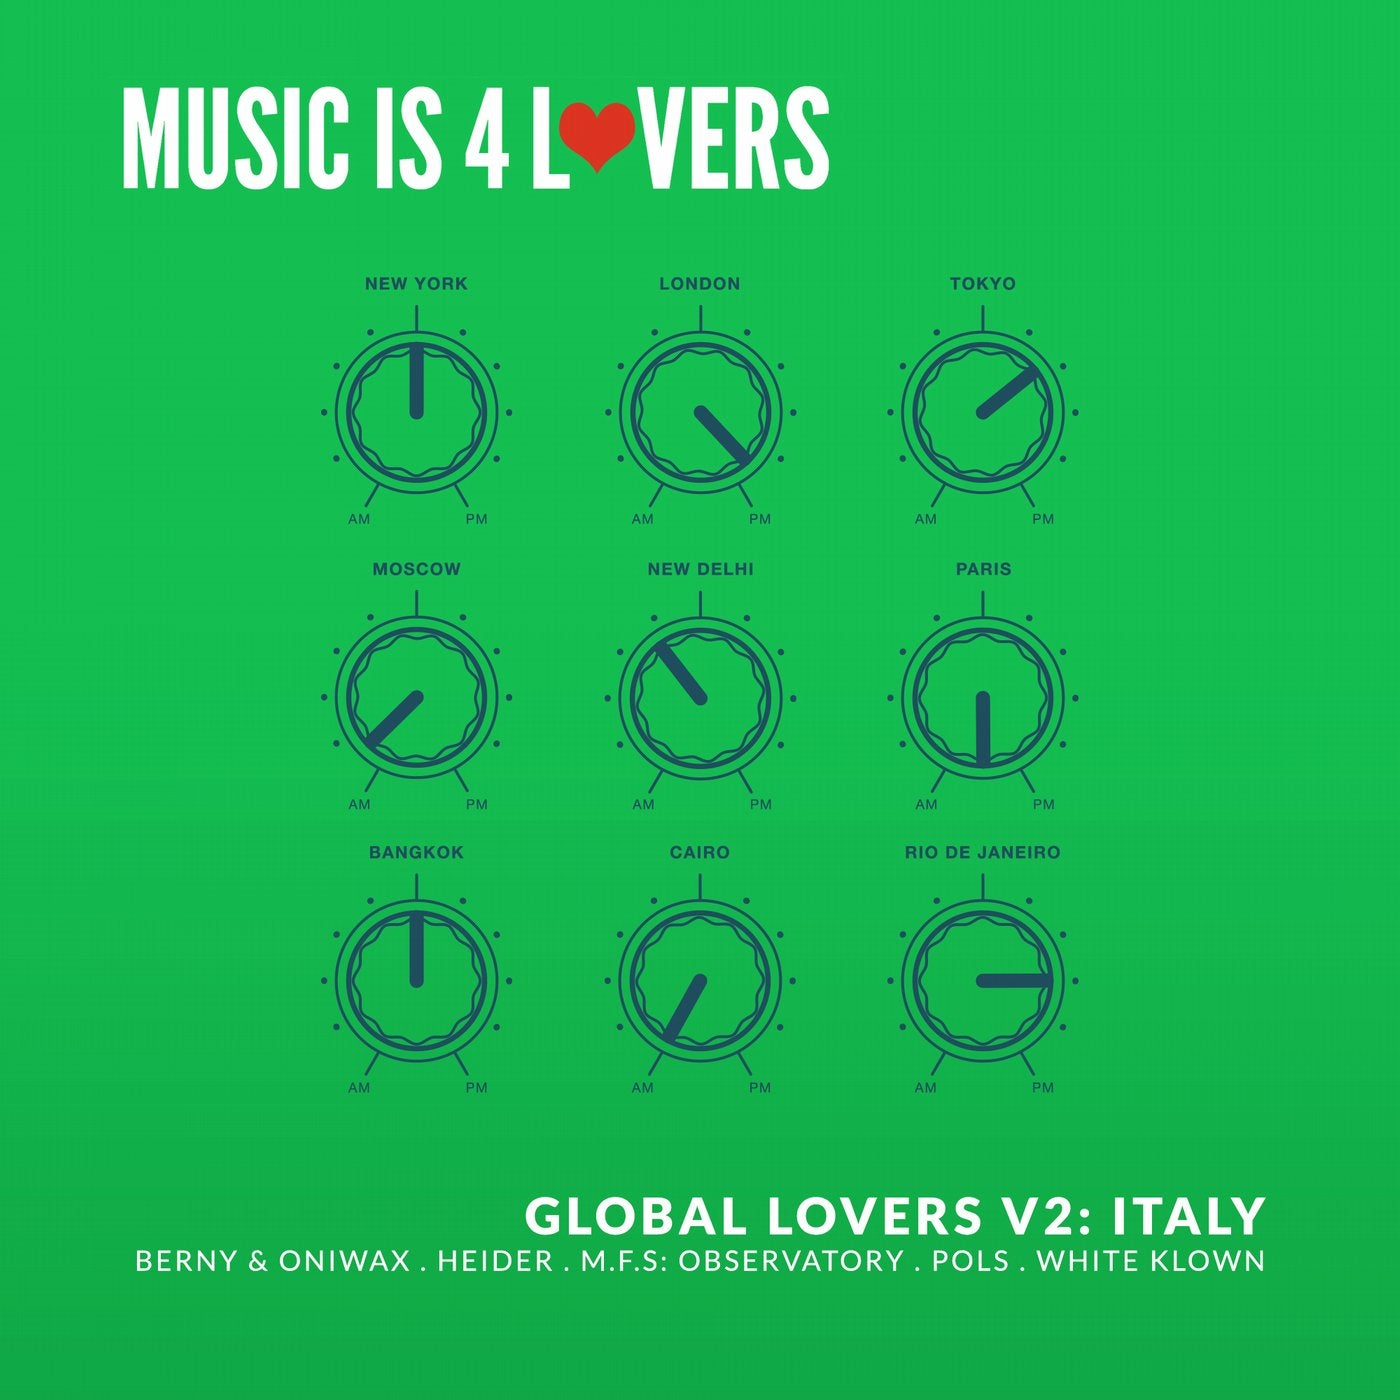 Global Lovers V2: Italy